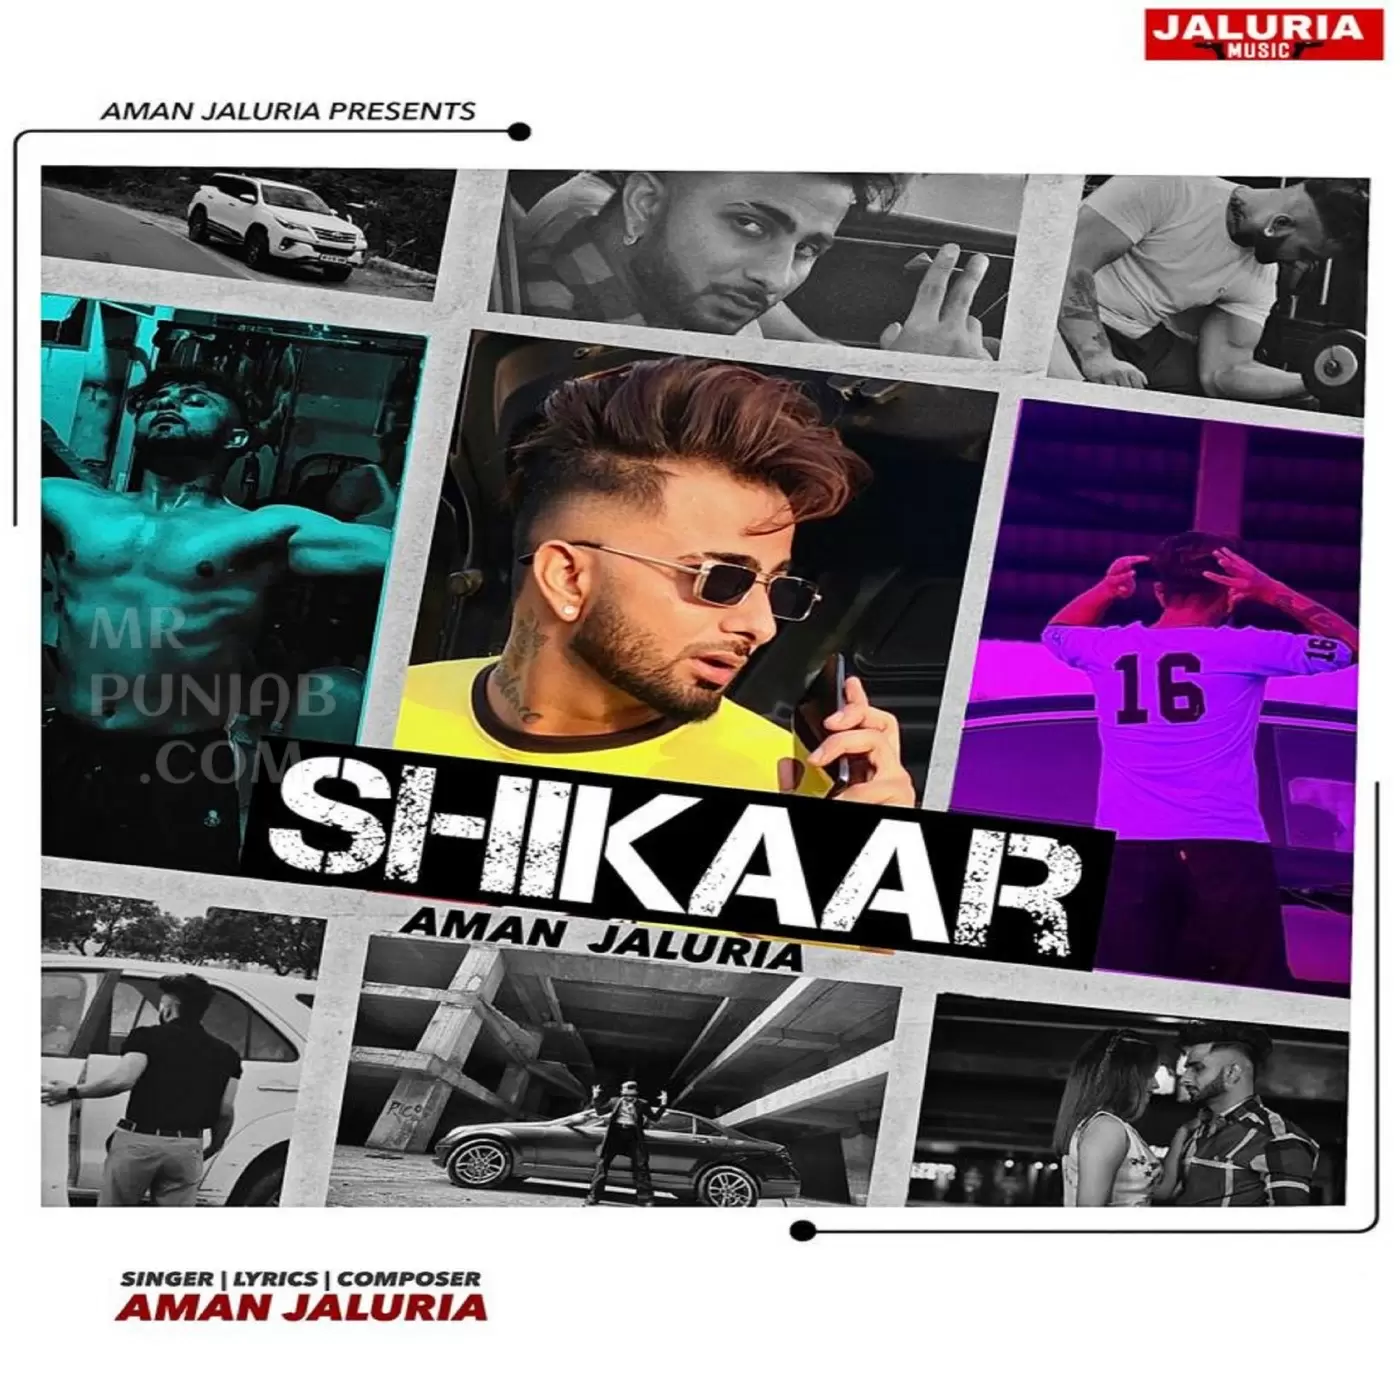 Shikaar Aman Jaluria Mp3 Download Song - Mr-Punjab